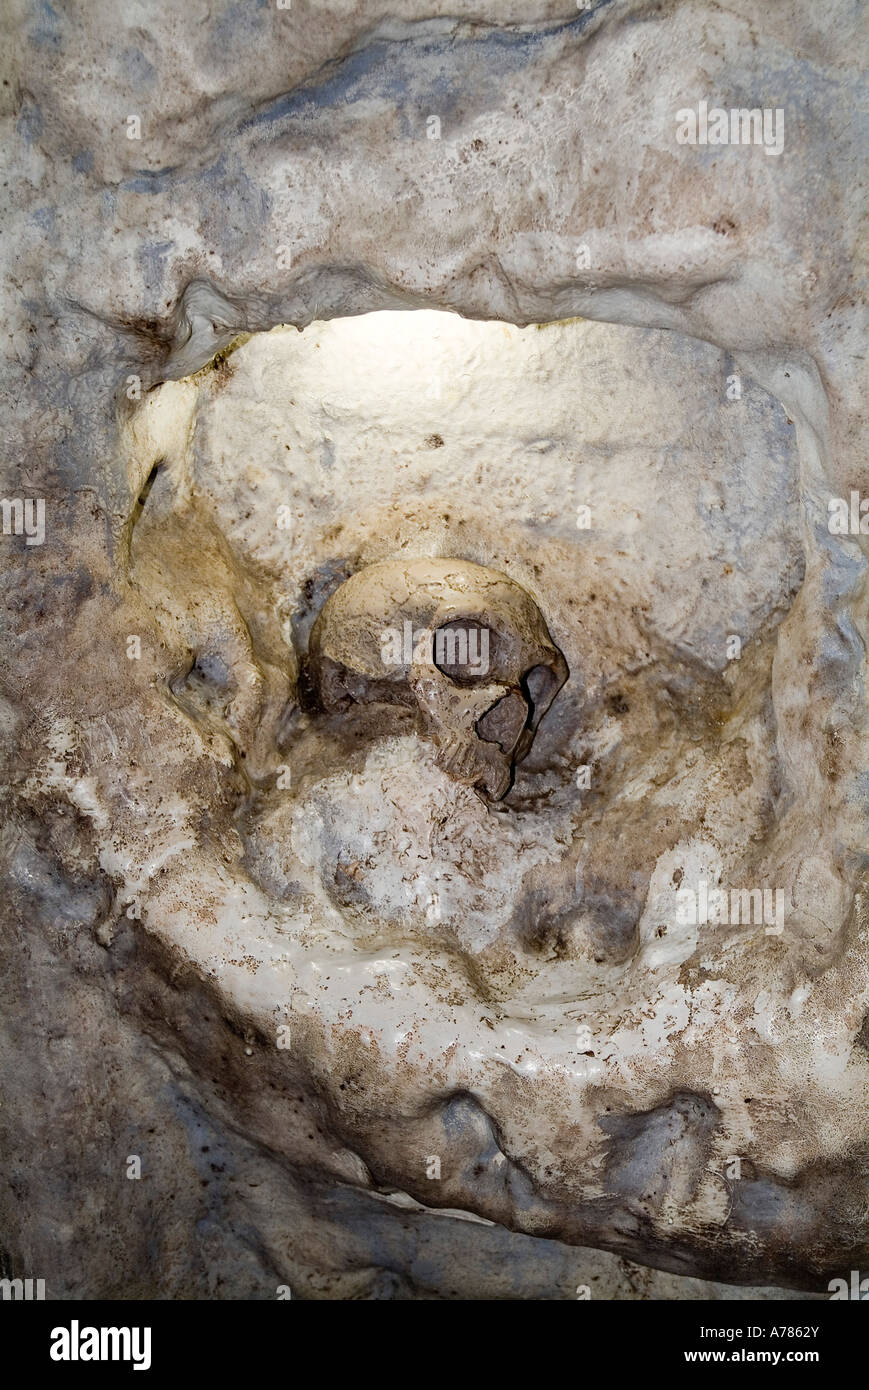 dh grotte preistoriche sito ST MICHAELS CAVE GIBILTERRA replica del primo tipo Neanderthal cranio umano preistoria uomo cranio scheletro resti scheletro Foto Stock